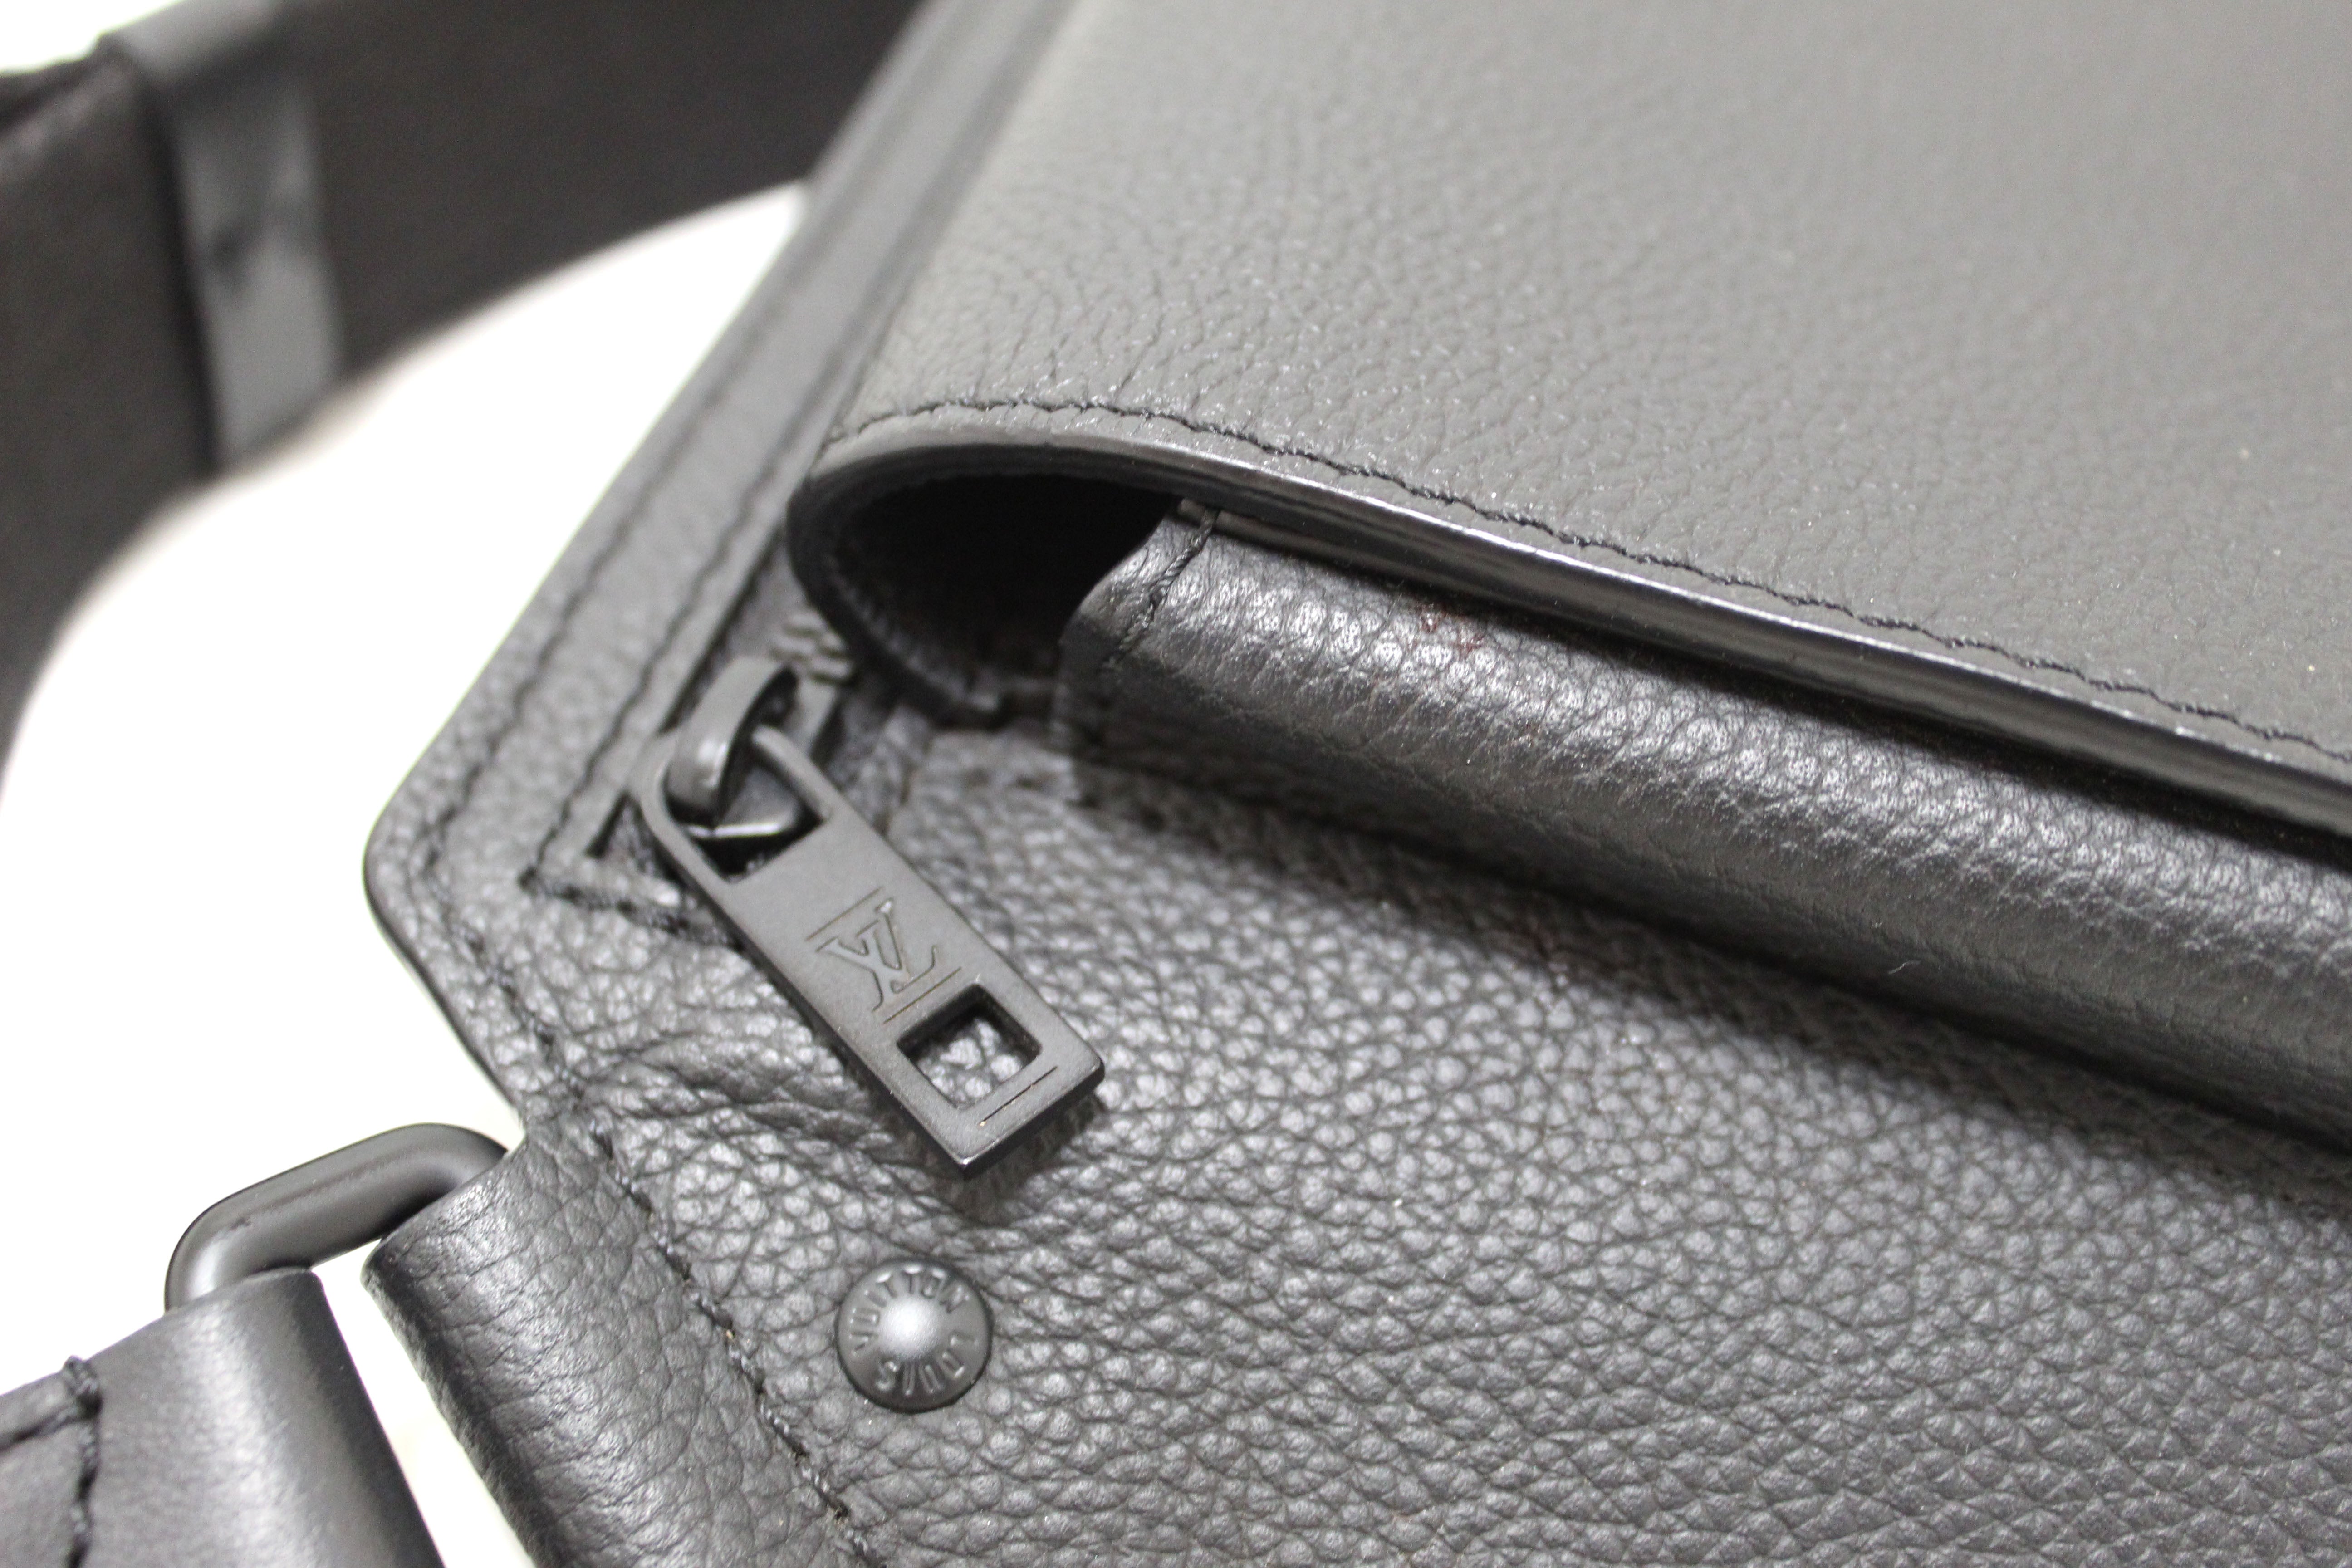 Authentic Louis Vuitton Black Leather Takeoff Sling Bag – Paris